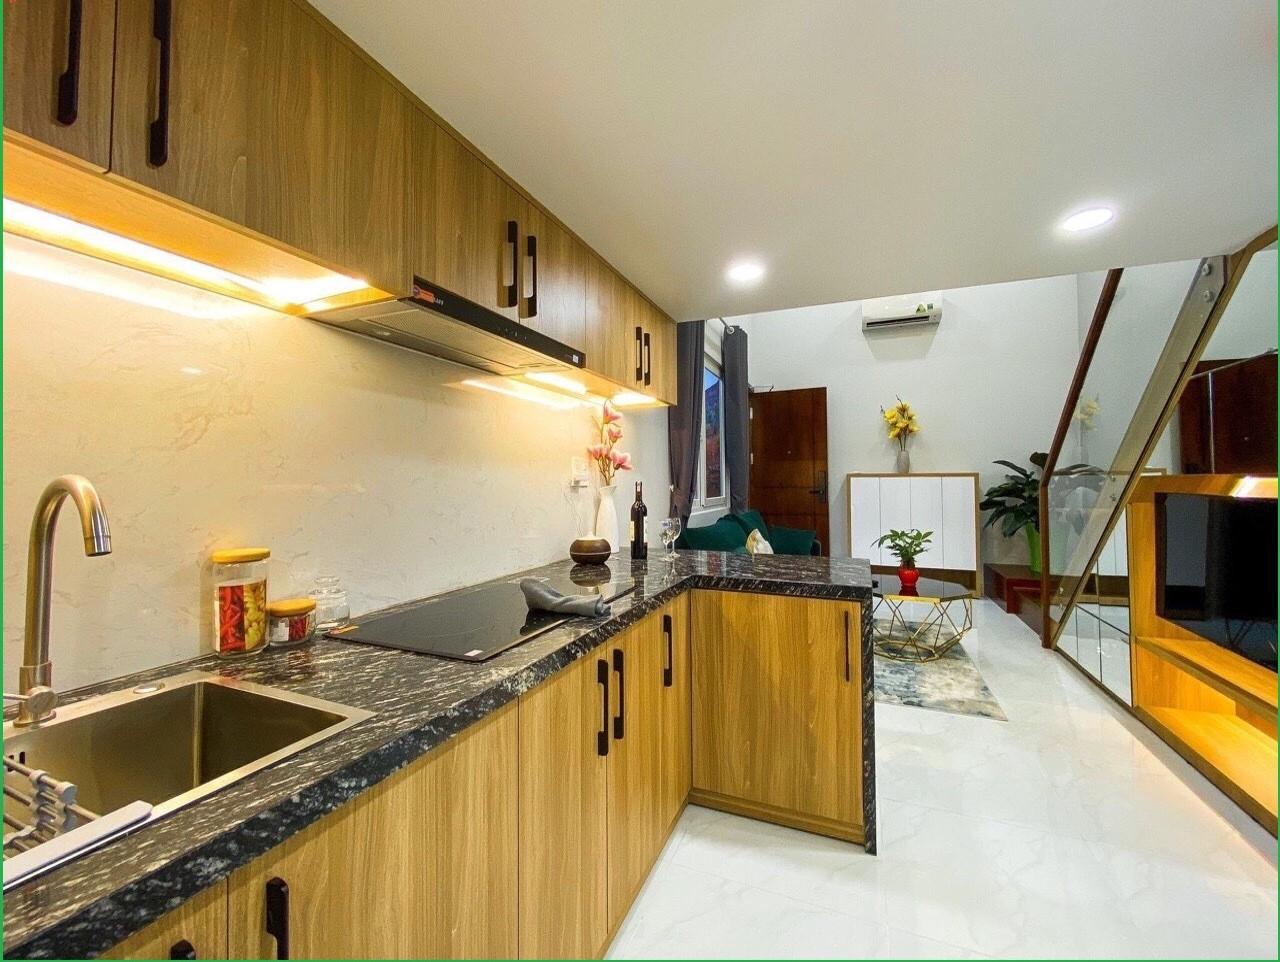 Phòng bếp được thiết kế mở, kết hợp hài hòa với phòng khách và được trang bị thiết bị nhà bếp hiện đại